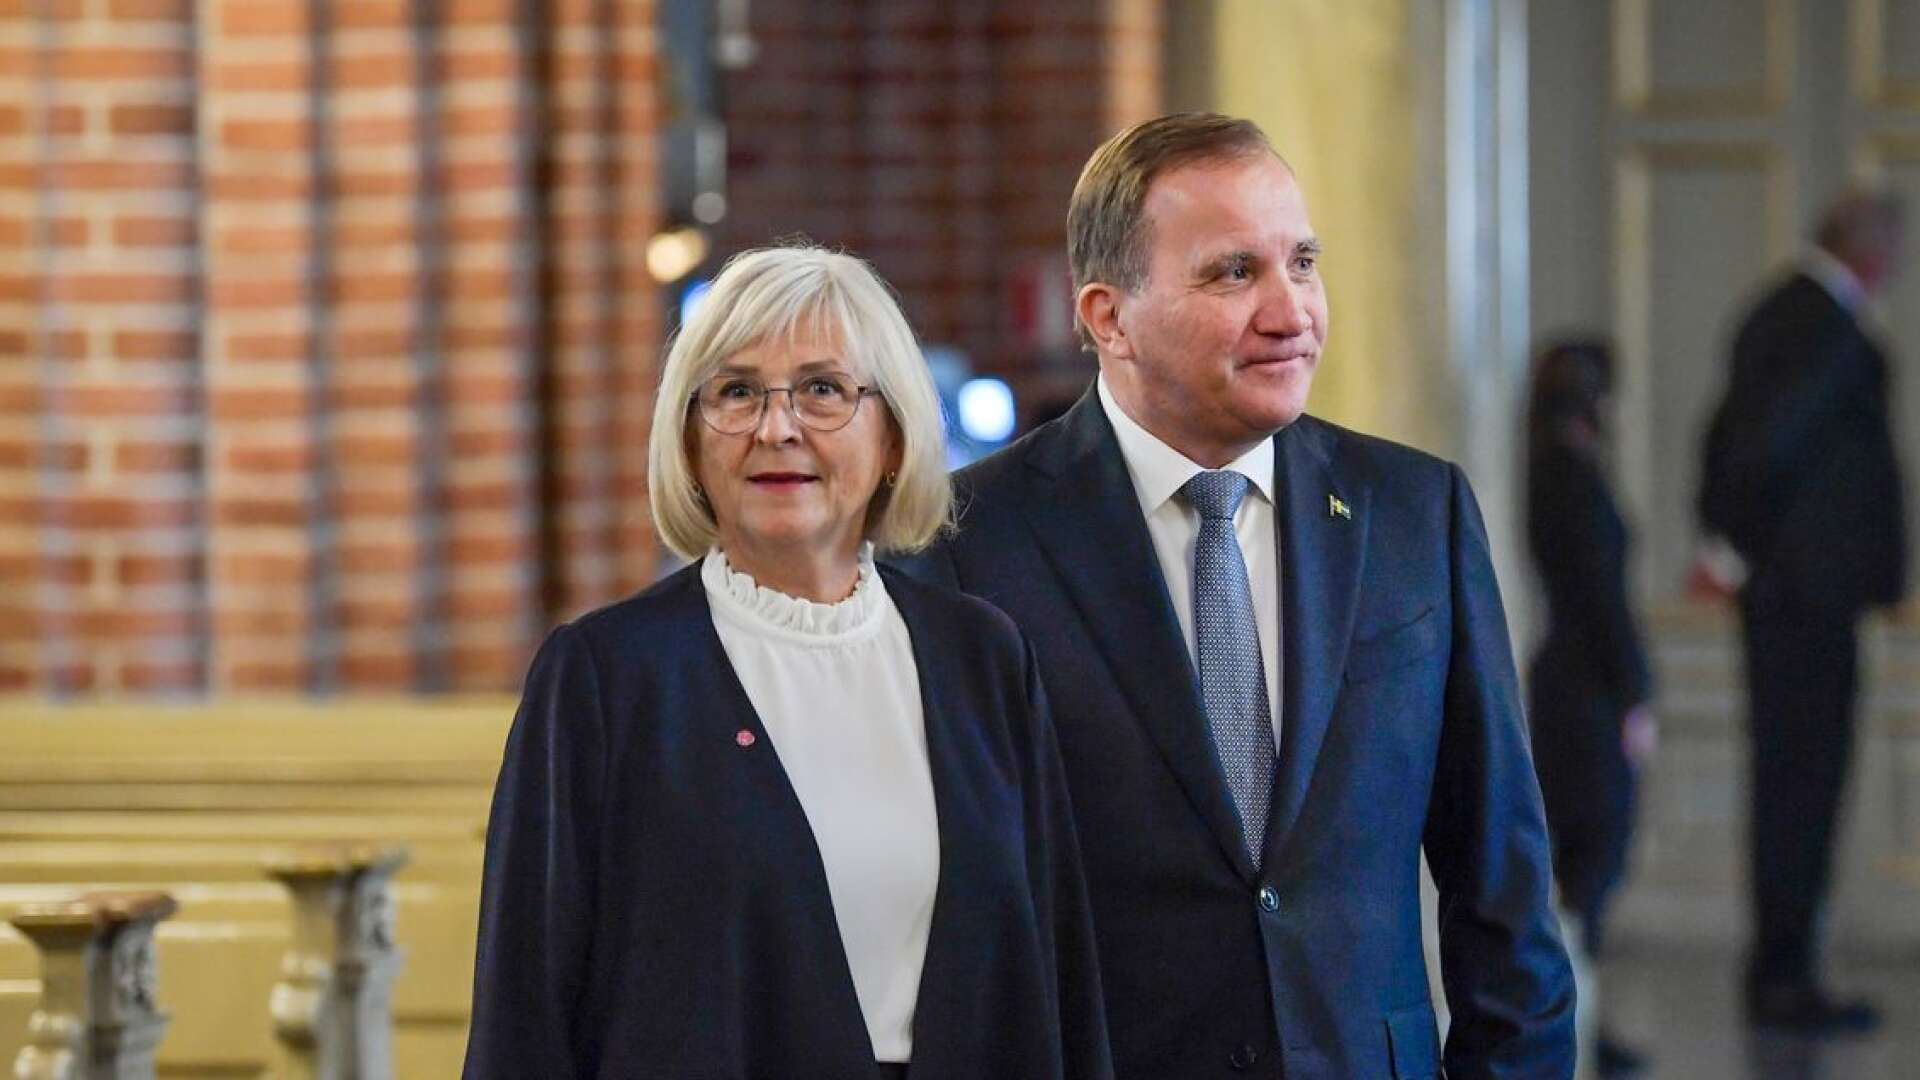 Stefan Löfven kommer från försvarsindustrin Hägglunds och var ordförande för Metall där innan han blev statsminister. Tillsammans med hustru Ulla gjorde han ett trevligt intryck när de framträdde i tv nyligen.